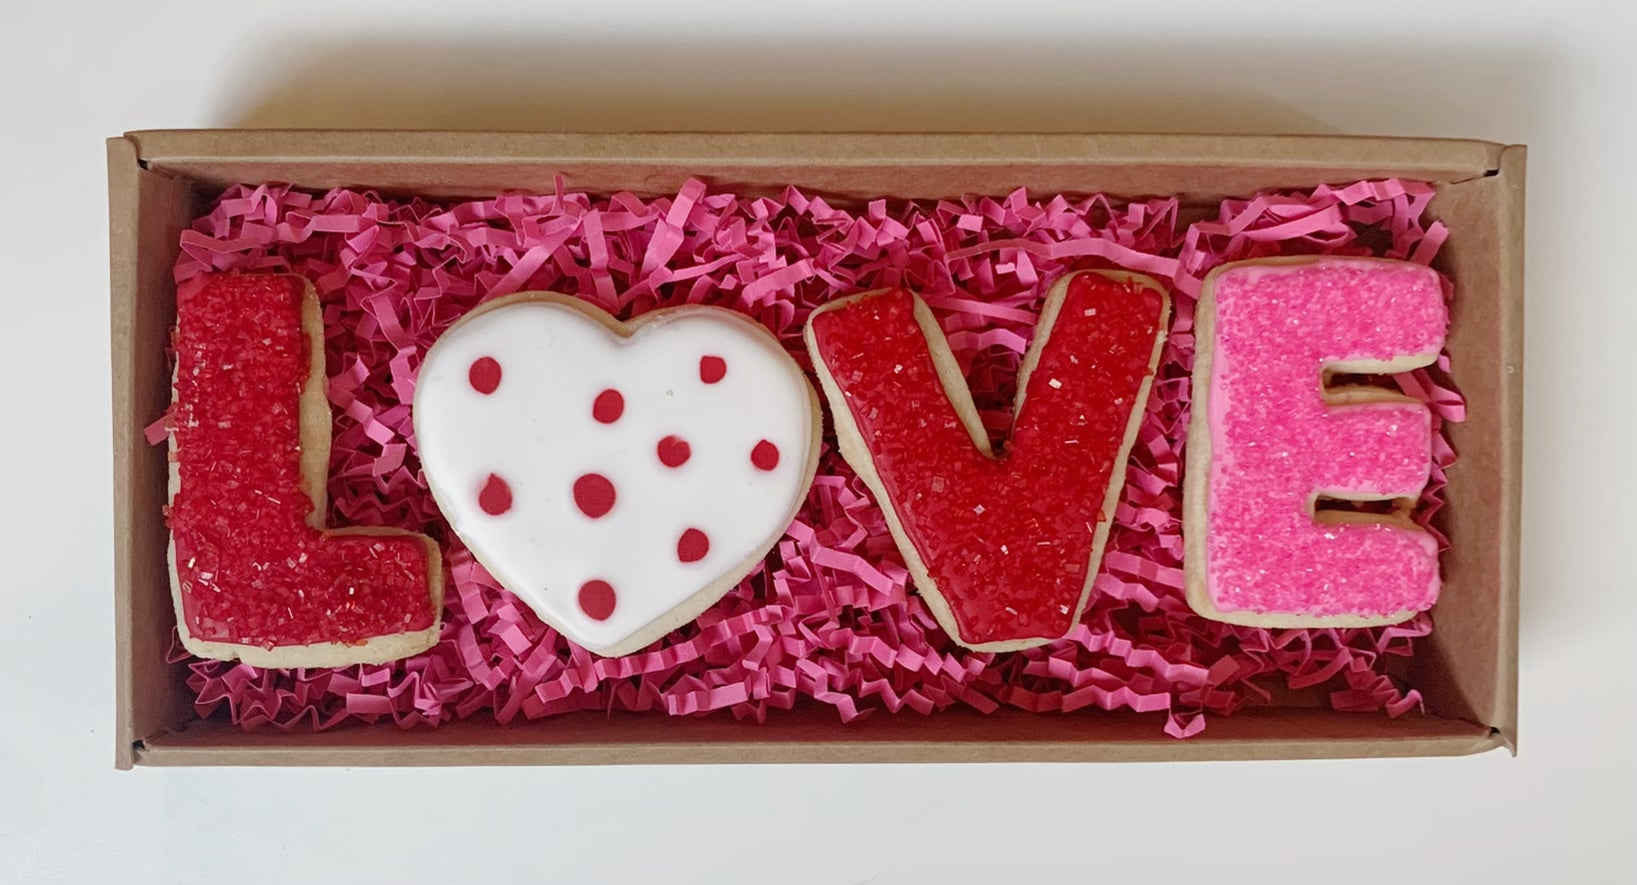 VALENTINE "LOVE" COOKIE GIFT BOX